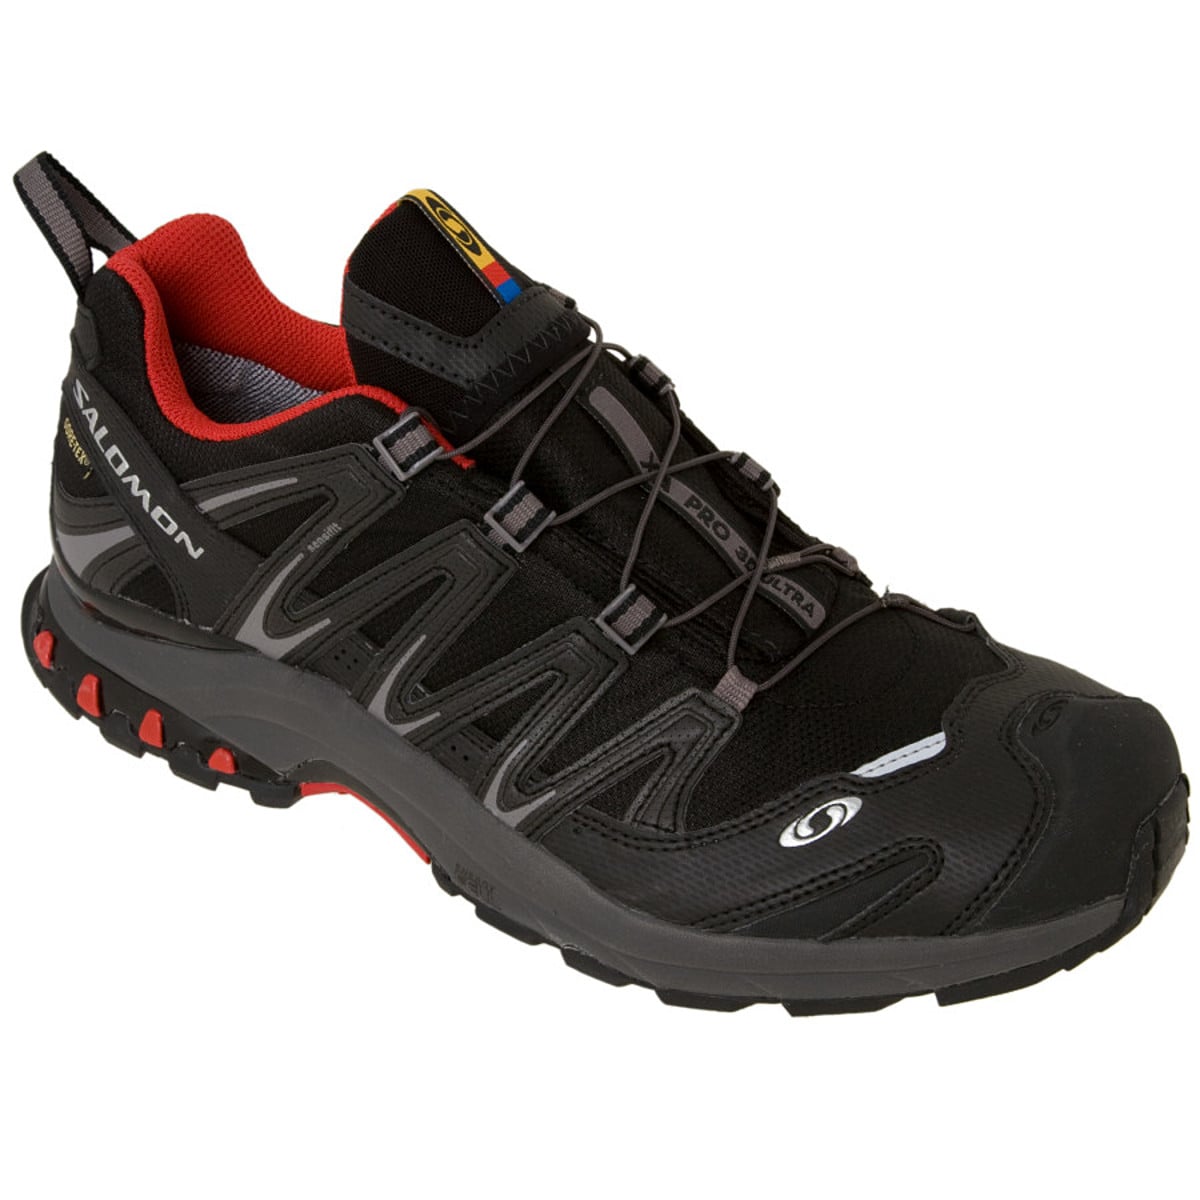 XA Pro 3D Ultra Trail Shoe - Men's Footwear